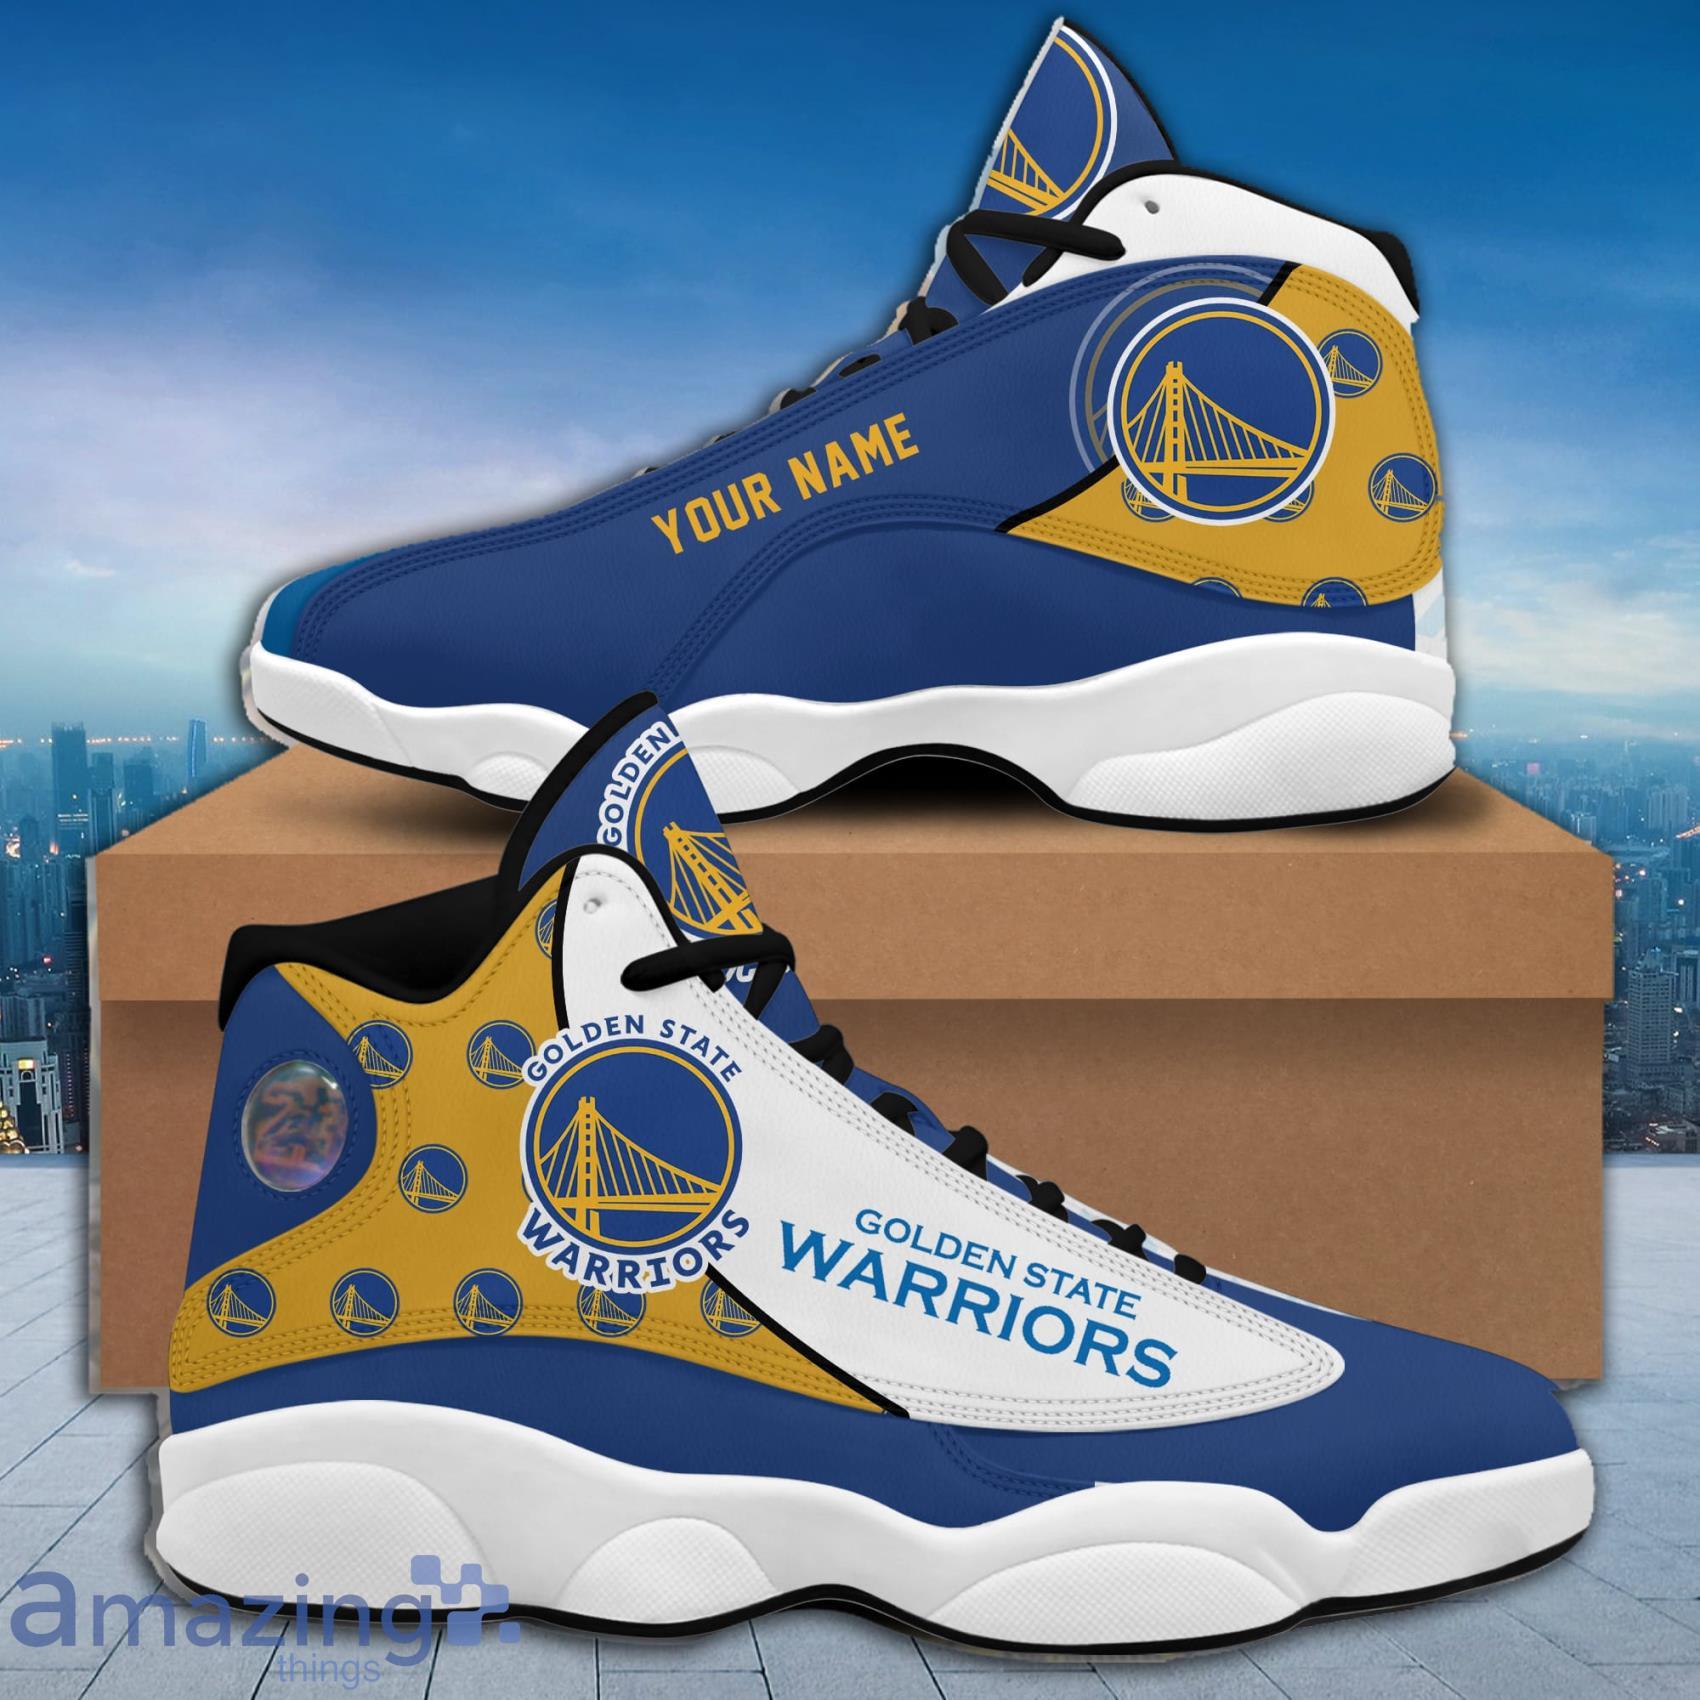 Golden State Warriors NBA Team Sneakers Custom Name Air Jordan 13